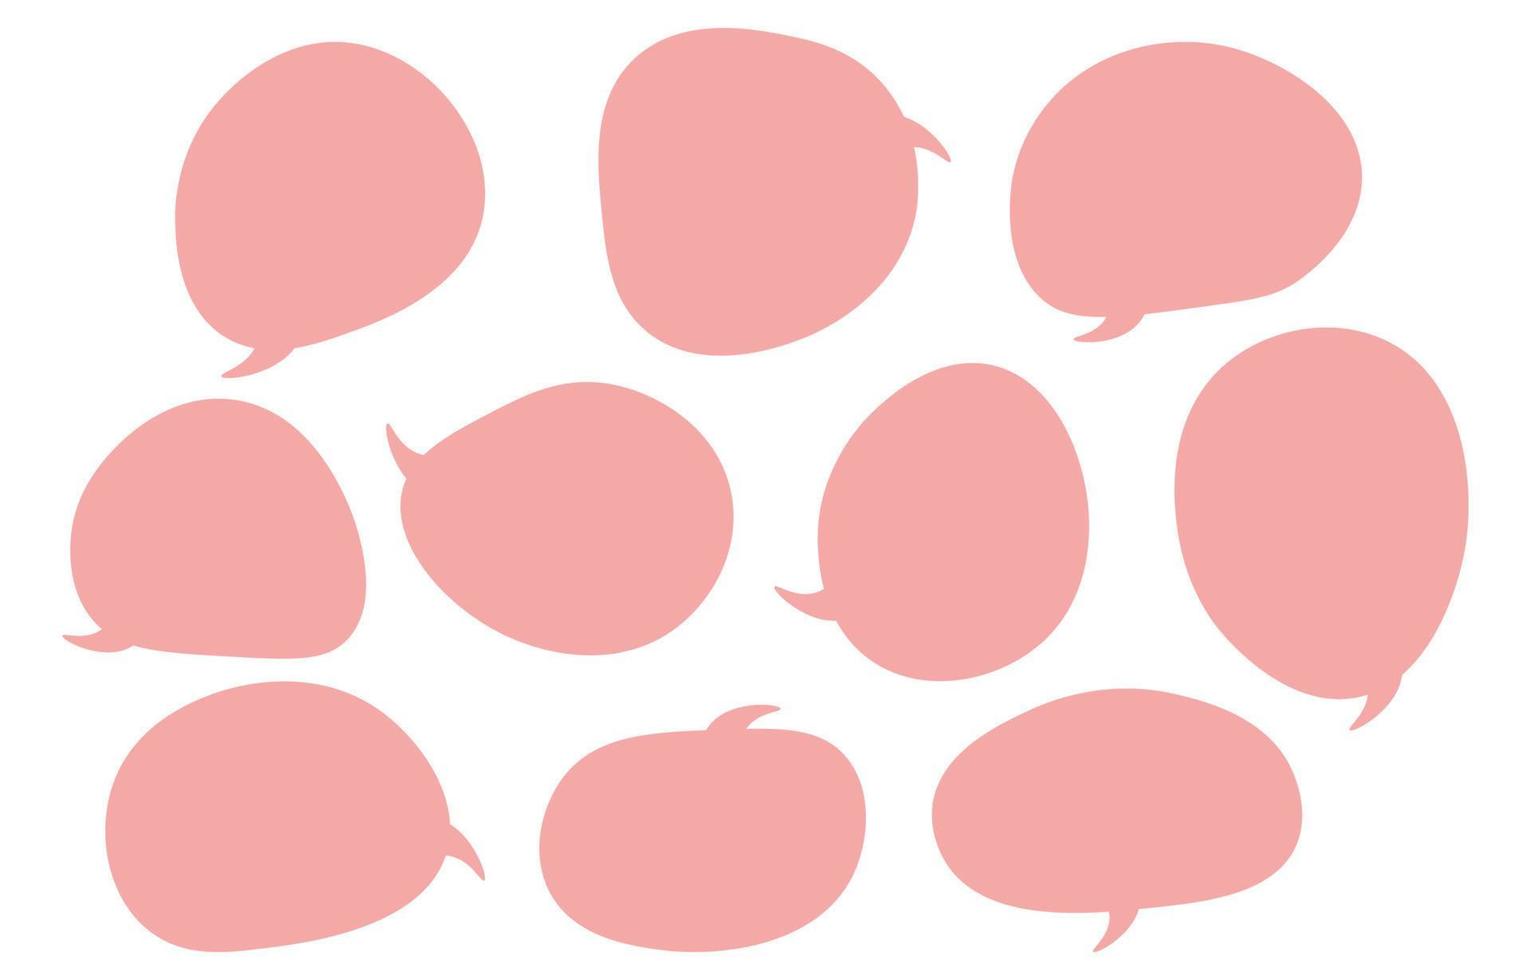 zet tekstballon op een witte achtergrond, vector spreken of chat talk box, pictogram ballon tekst of communicatie, spreek wolk voor cartoon en strip, bericht dialoog